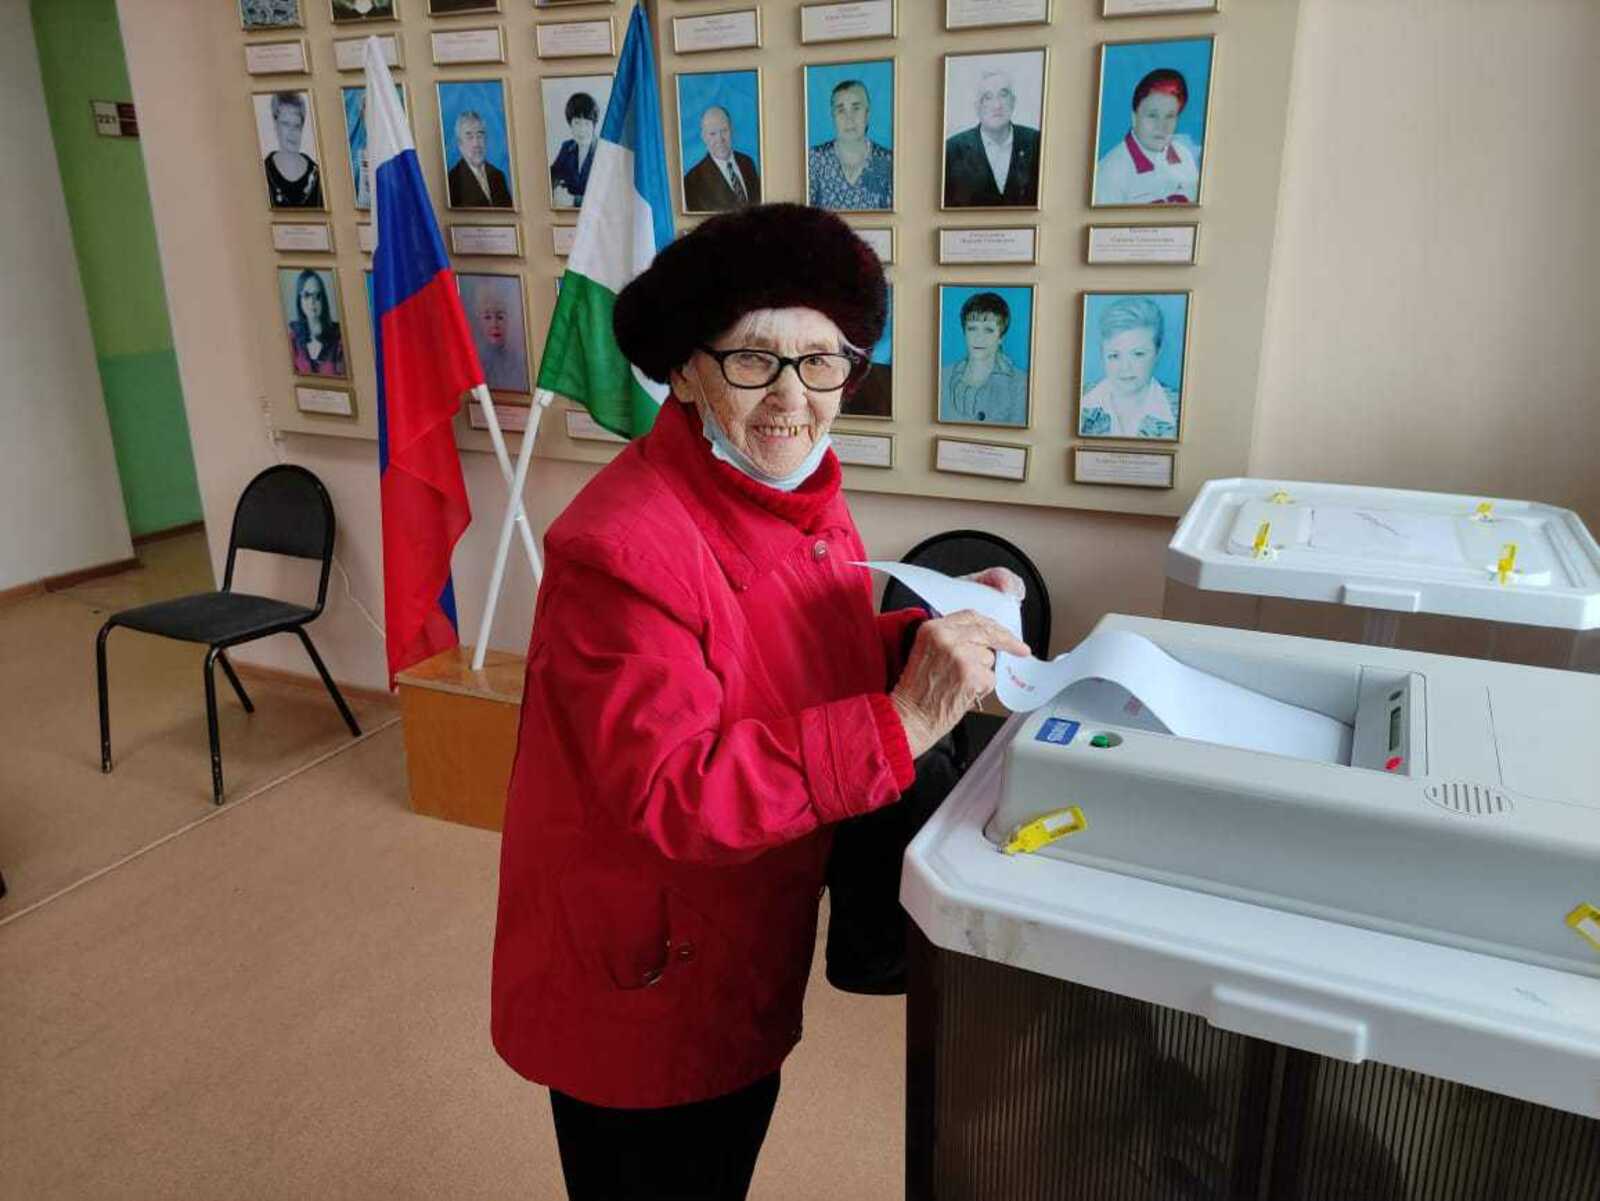 Долгожители Башкирии не жалуются на жизнь, но на выборы идут ради лучшего будущего